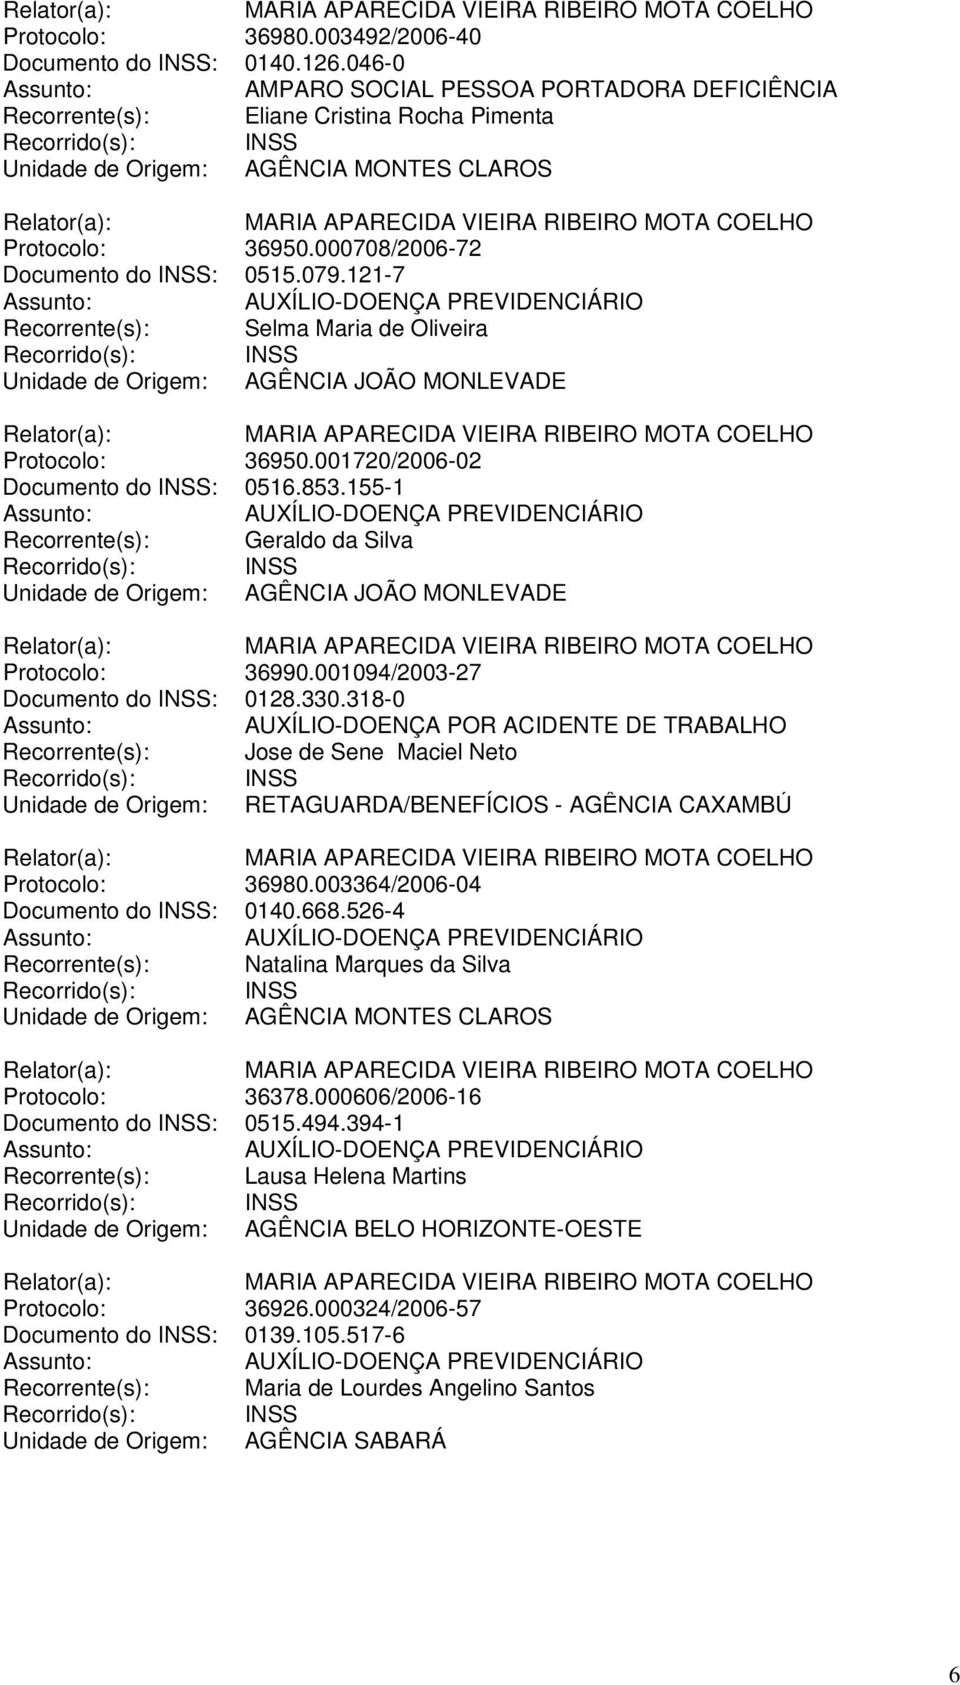 155-1 Recorrente(s): Geraldo da Silva Unidade de Origem: AGÊNCIA JOÃO MONLEVADE Protocolo: 36990.001094/2003-27 Documento do INSS: 0128.330.